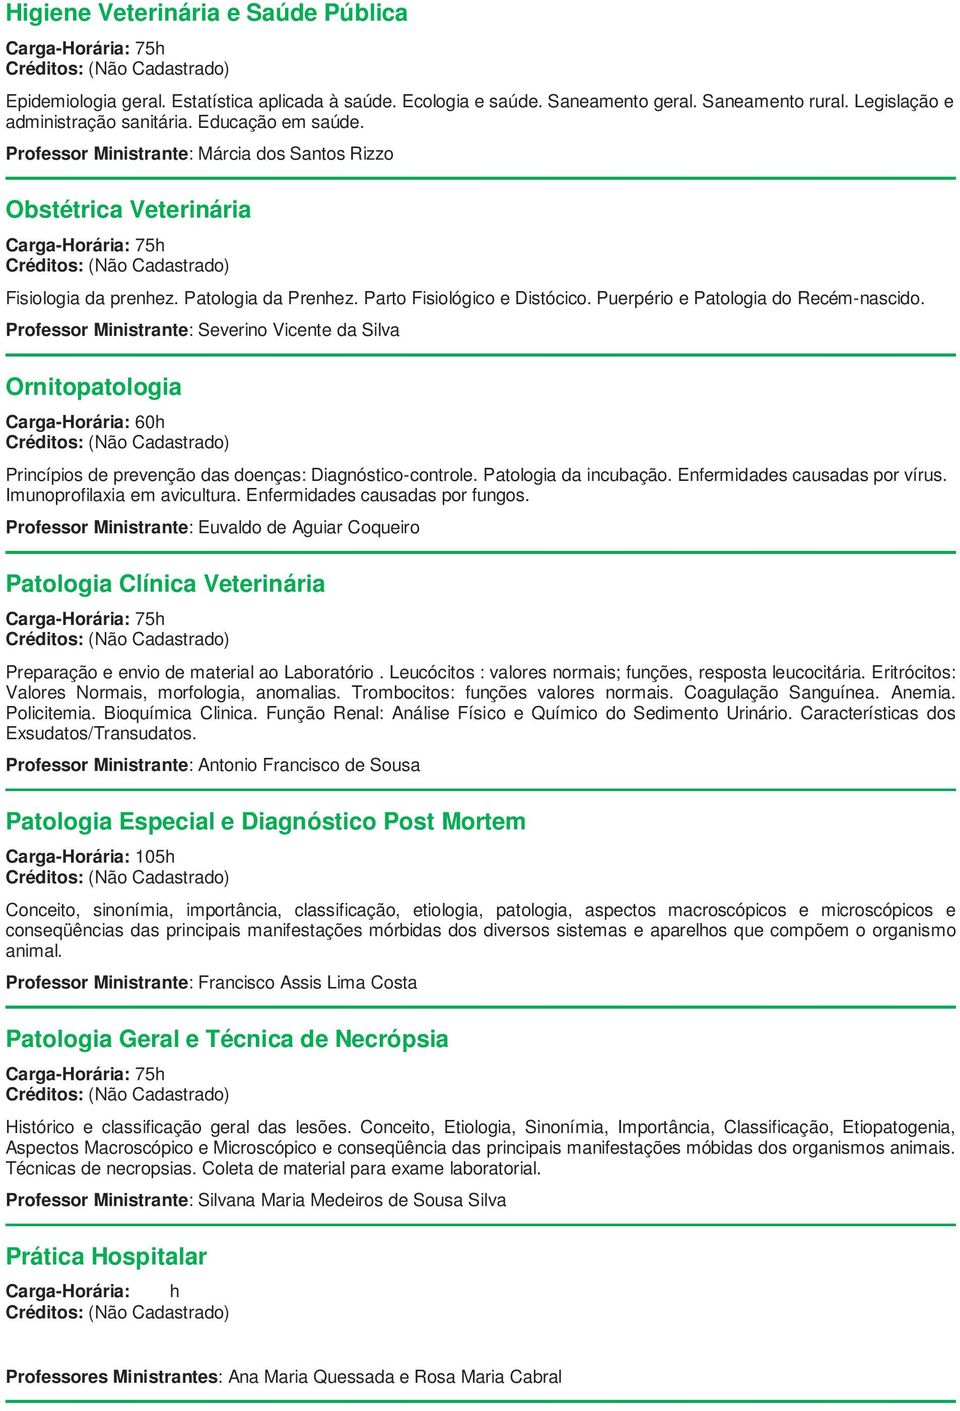 Ornitopatologia Princípios de prevenção das doenças: Diagnóstico-controle. Patologia da incubação. Enfermidades causadas por vírus. Imunoprofilaxia em avicultura. Enfermidades causadas por fungos.